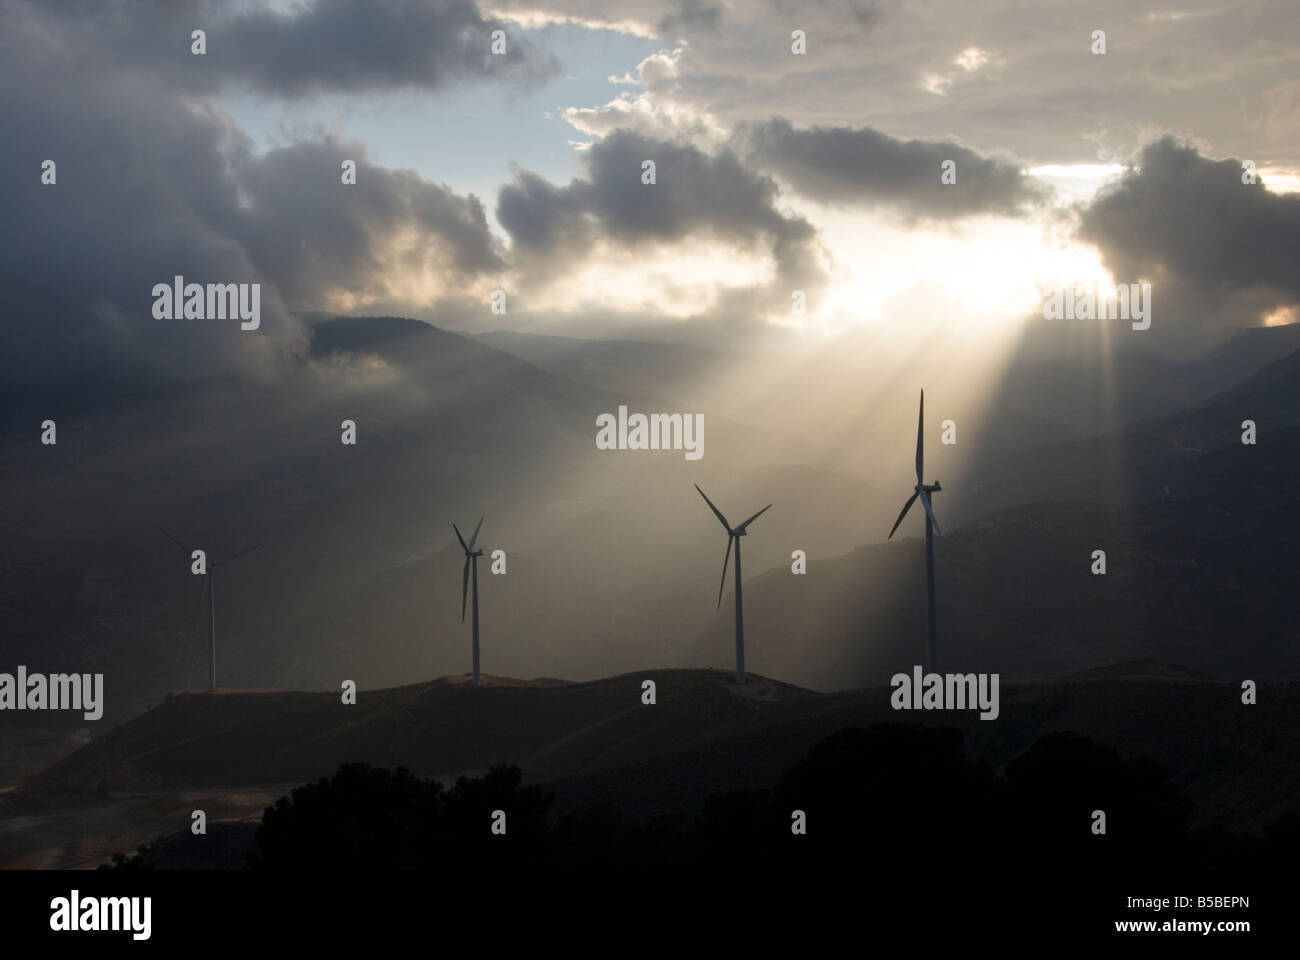 Les éoliennes qui produisent de l'énergie propre et durable, dans la Sierra Nevada de l'Andalousie, dans le sud de l'Espagne Banque D'Images